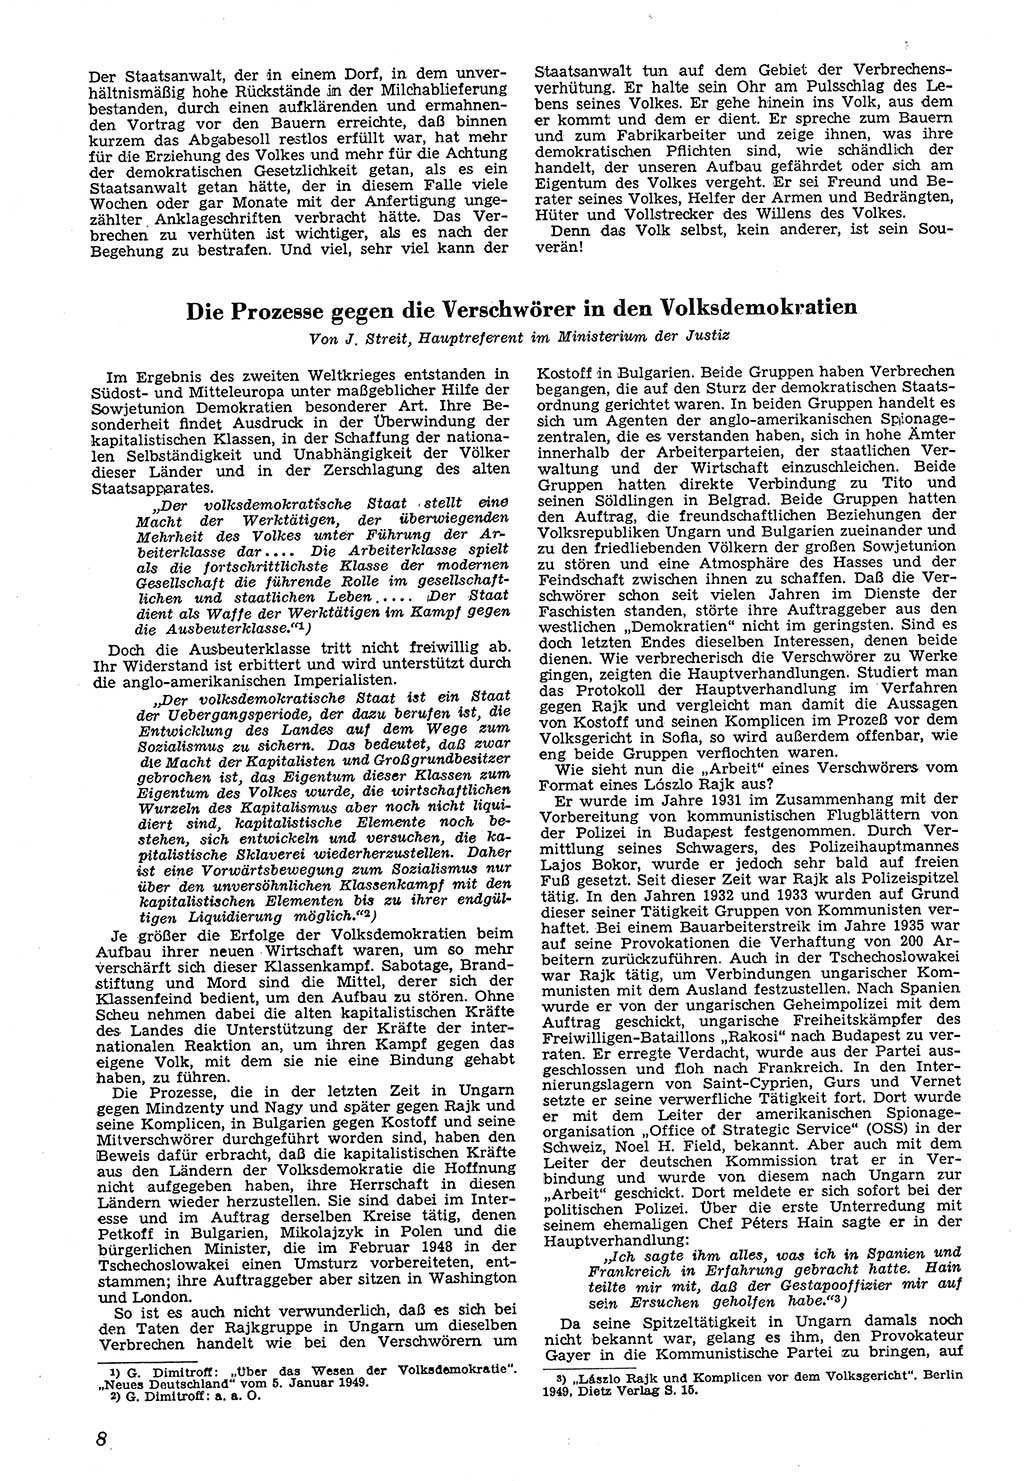 Neue Justiz (NJ), Zeitschrift für Recht und Rechtswissenschaft [Deutsche Demokratische Republik (DDR)], 4. Jahrgang 1950, Seite 8 (NJ DDR 1950, S. 8)